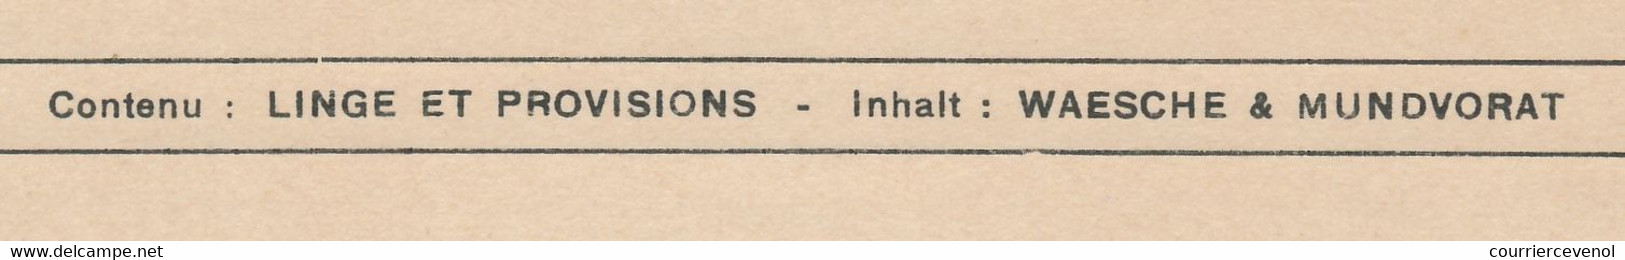 FRANCE - Grande étiquette Pour Envoi De Linge Et Provisions - Service Des Prisonniers De Guerre Kriegsgefangenensendung - Guerre De 1939-45